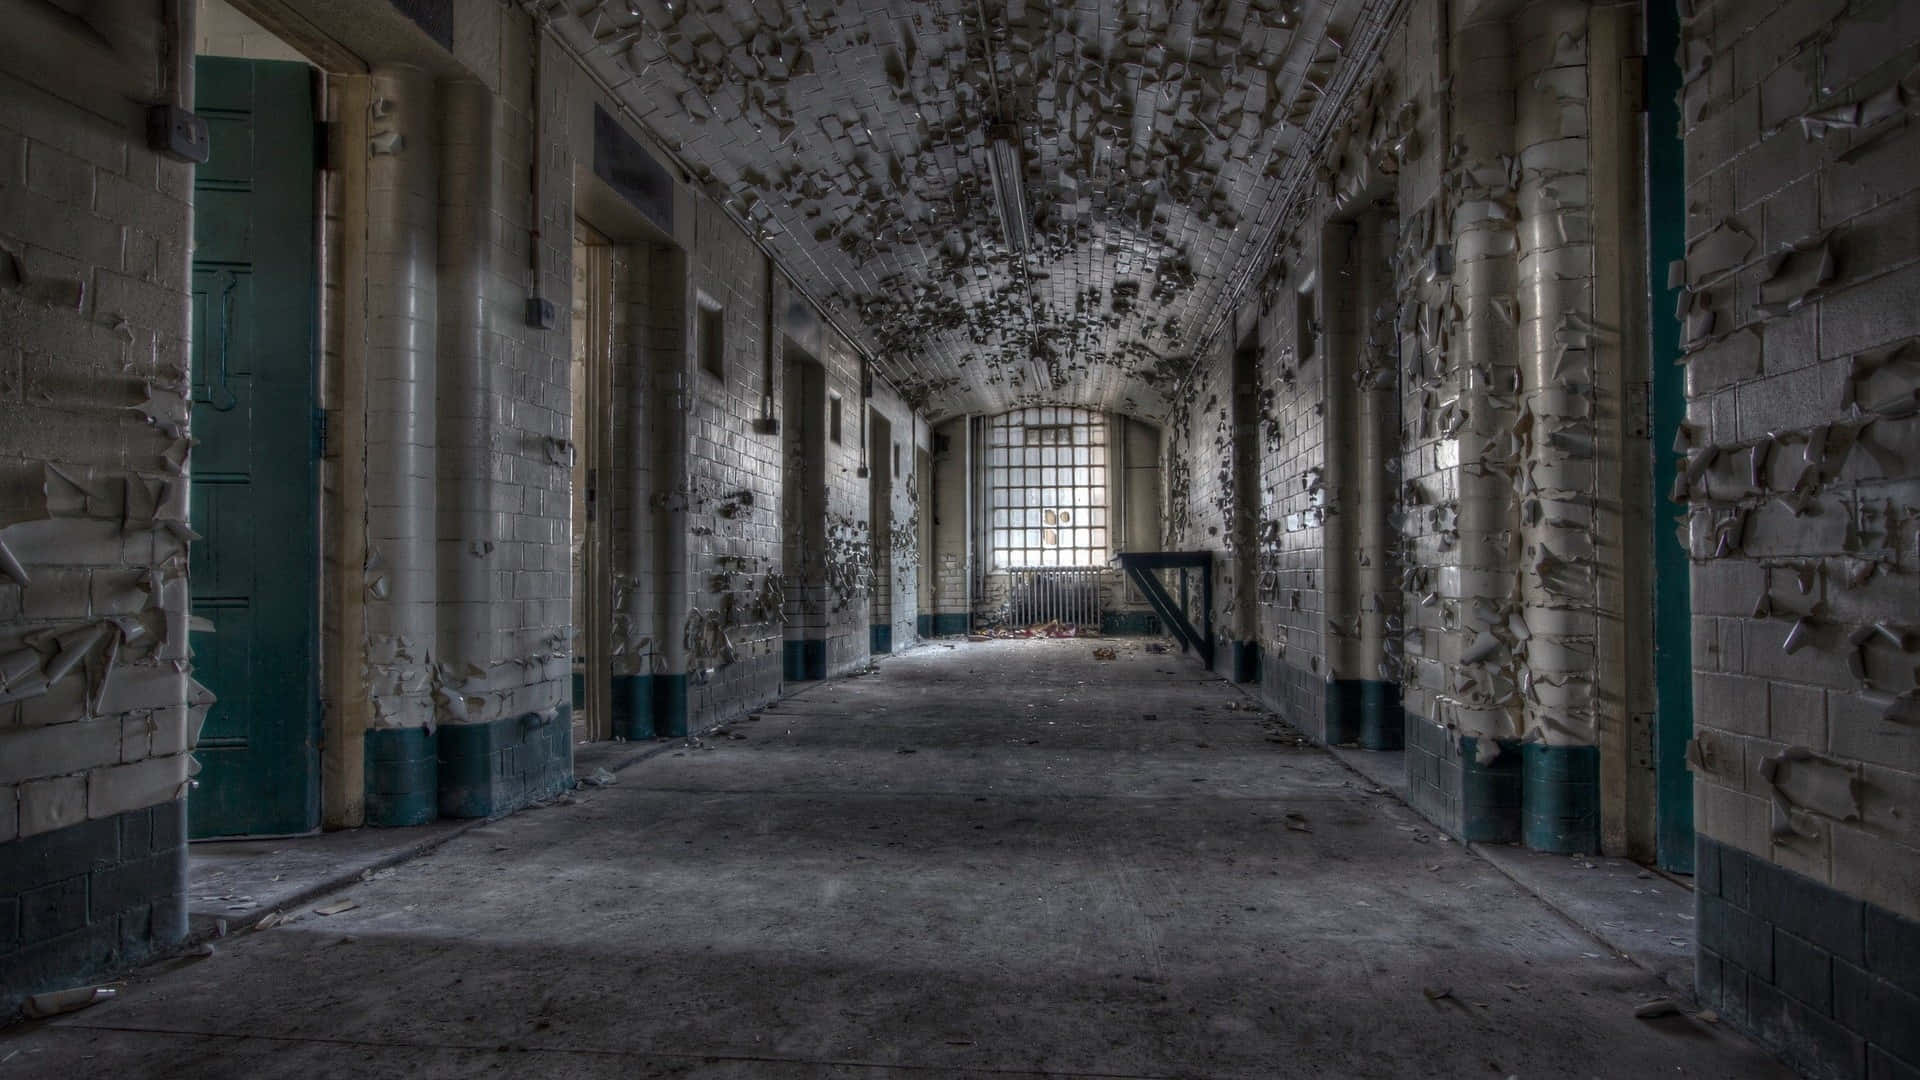 Dentrouna Cella Di Prigione